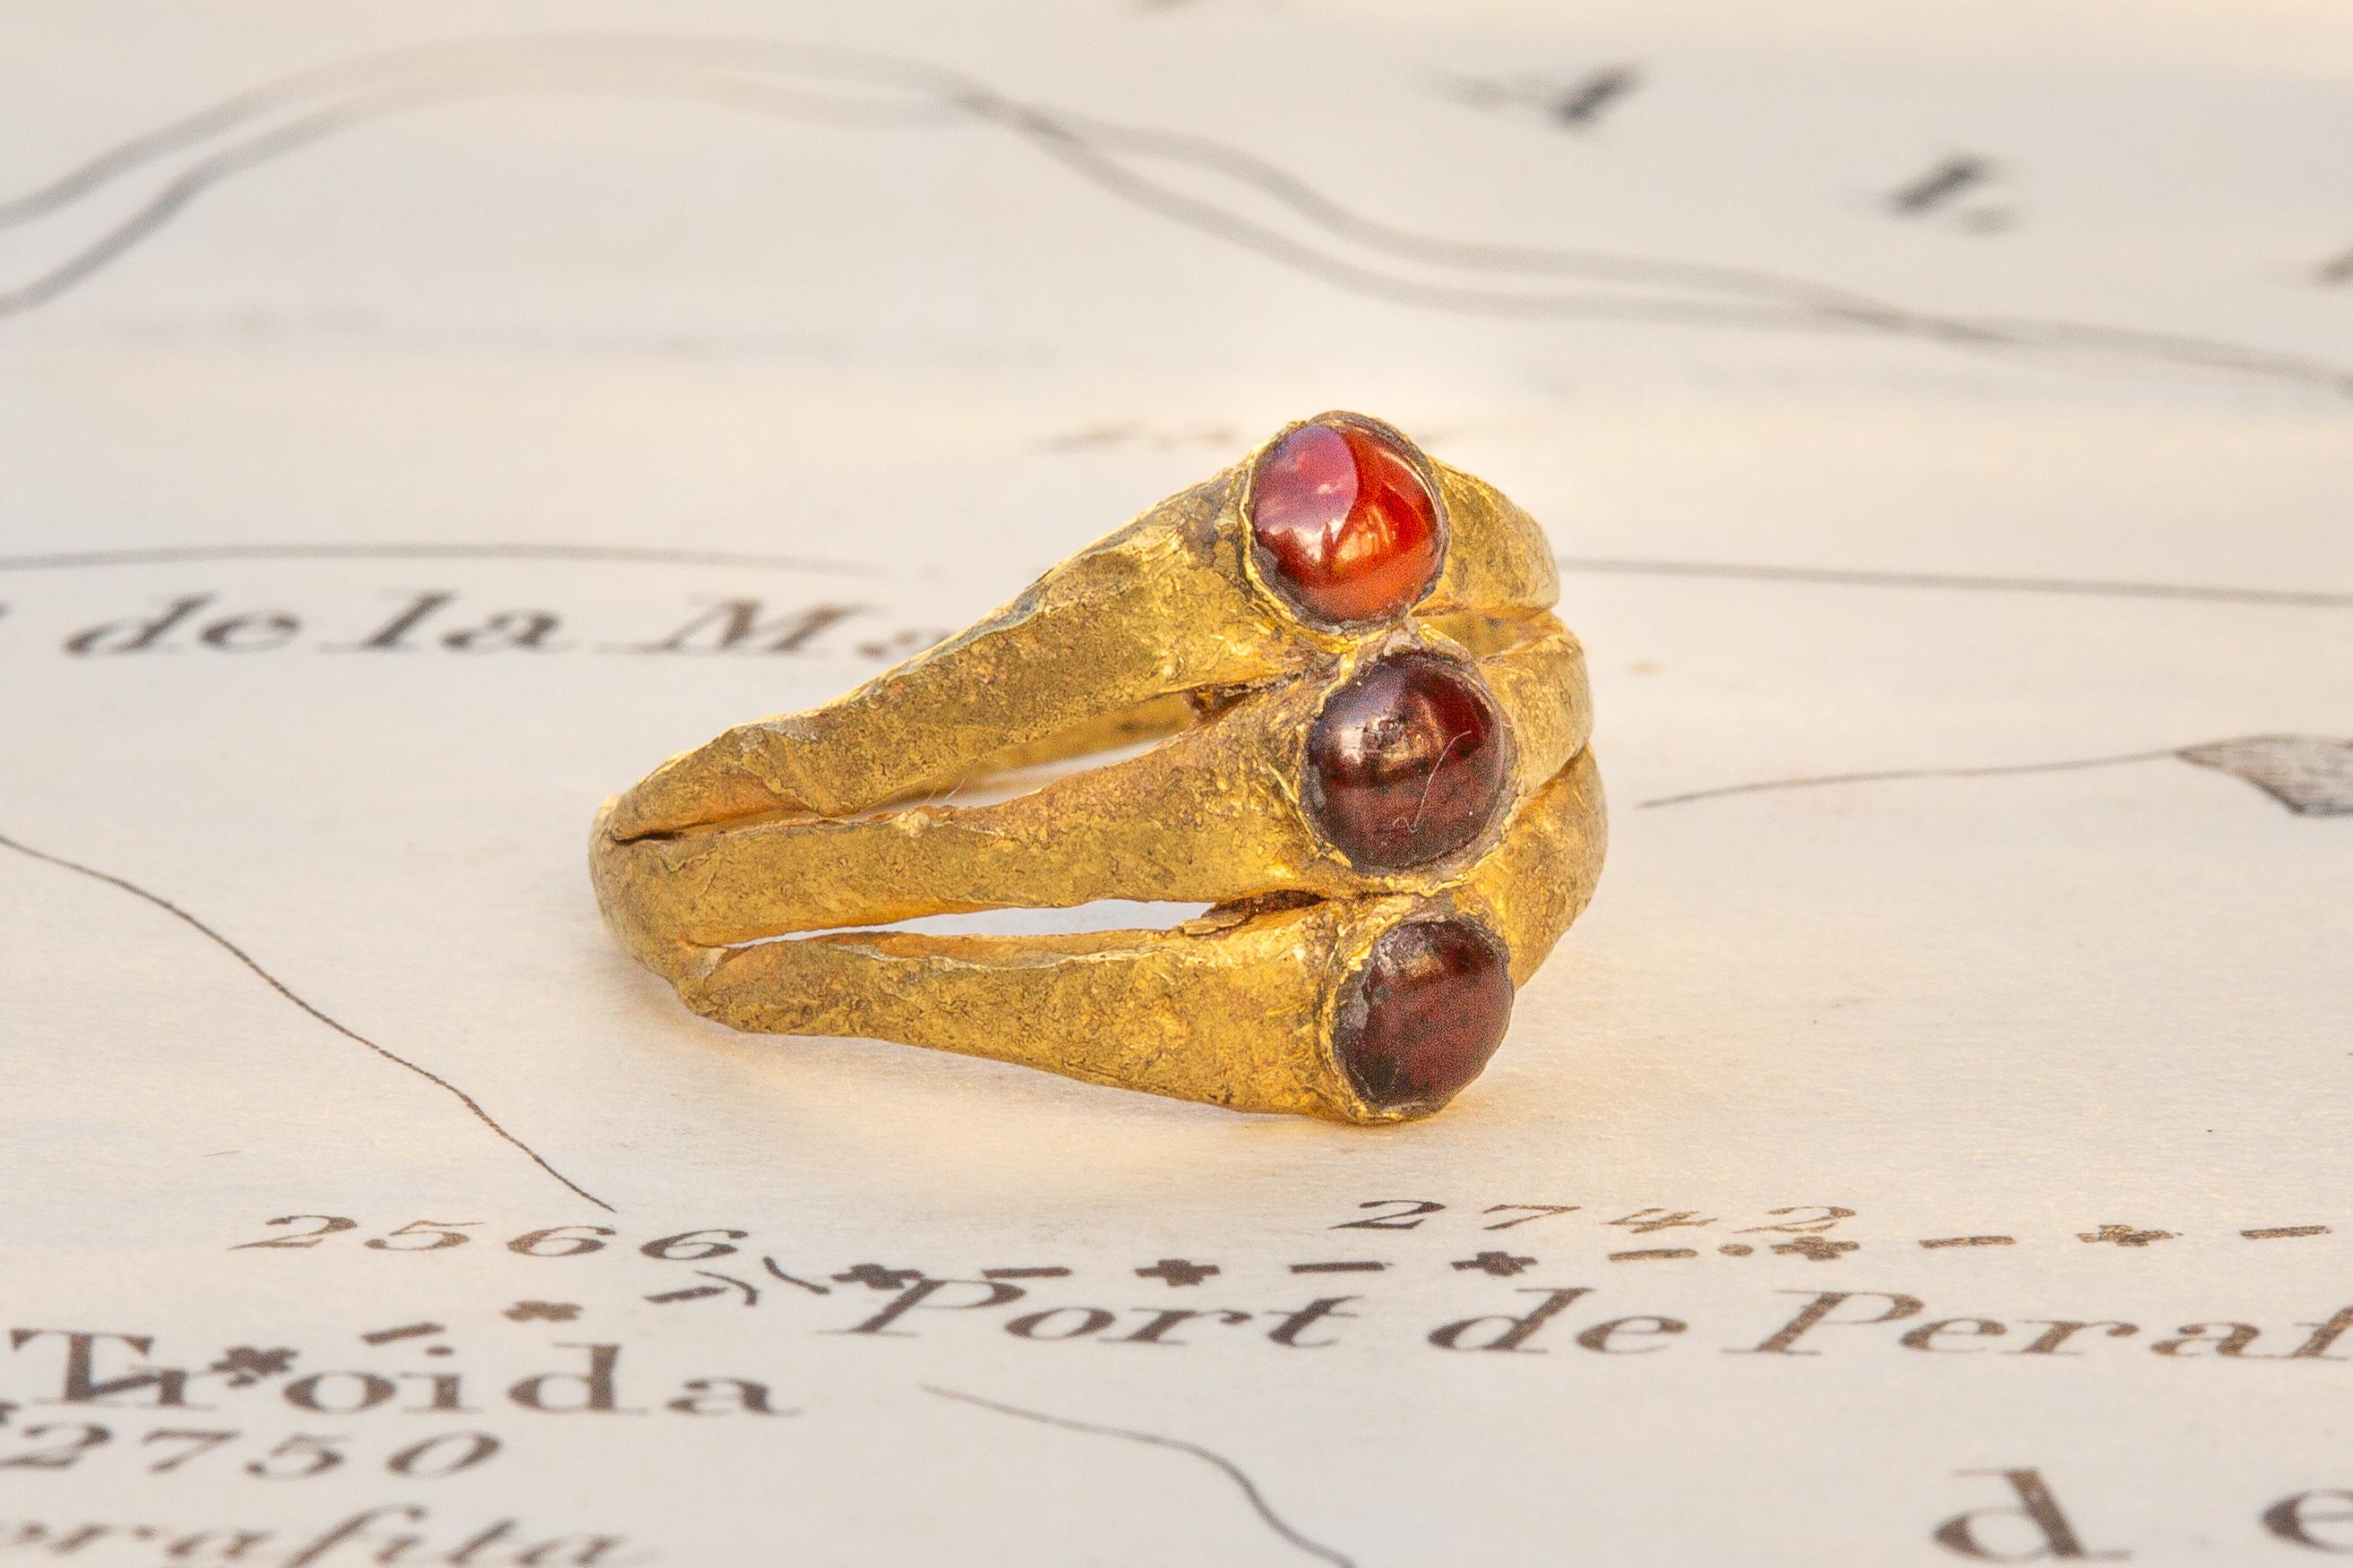 Ein schönes und seltenes Exemplar eines spätrömischen, dreilagigen Rings, besetzt mit Granatcabochons, um das 3. Das flache Band aus dickem, gehämmertem, hochkarätigem Gold gliedert sich an der Lünette in drei flache Goldbänder, die jeweils in der